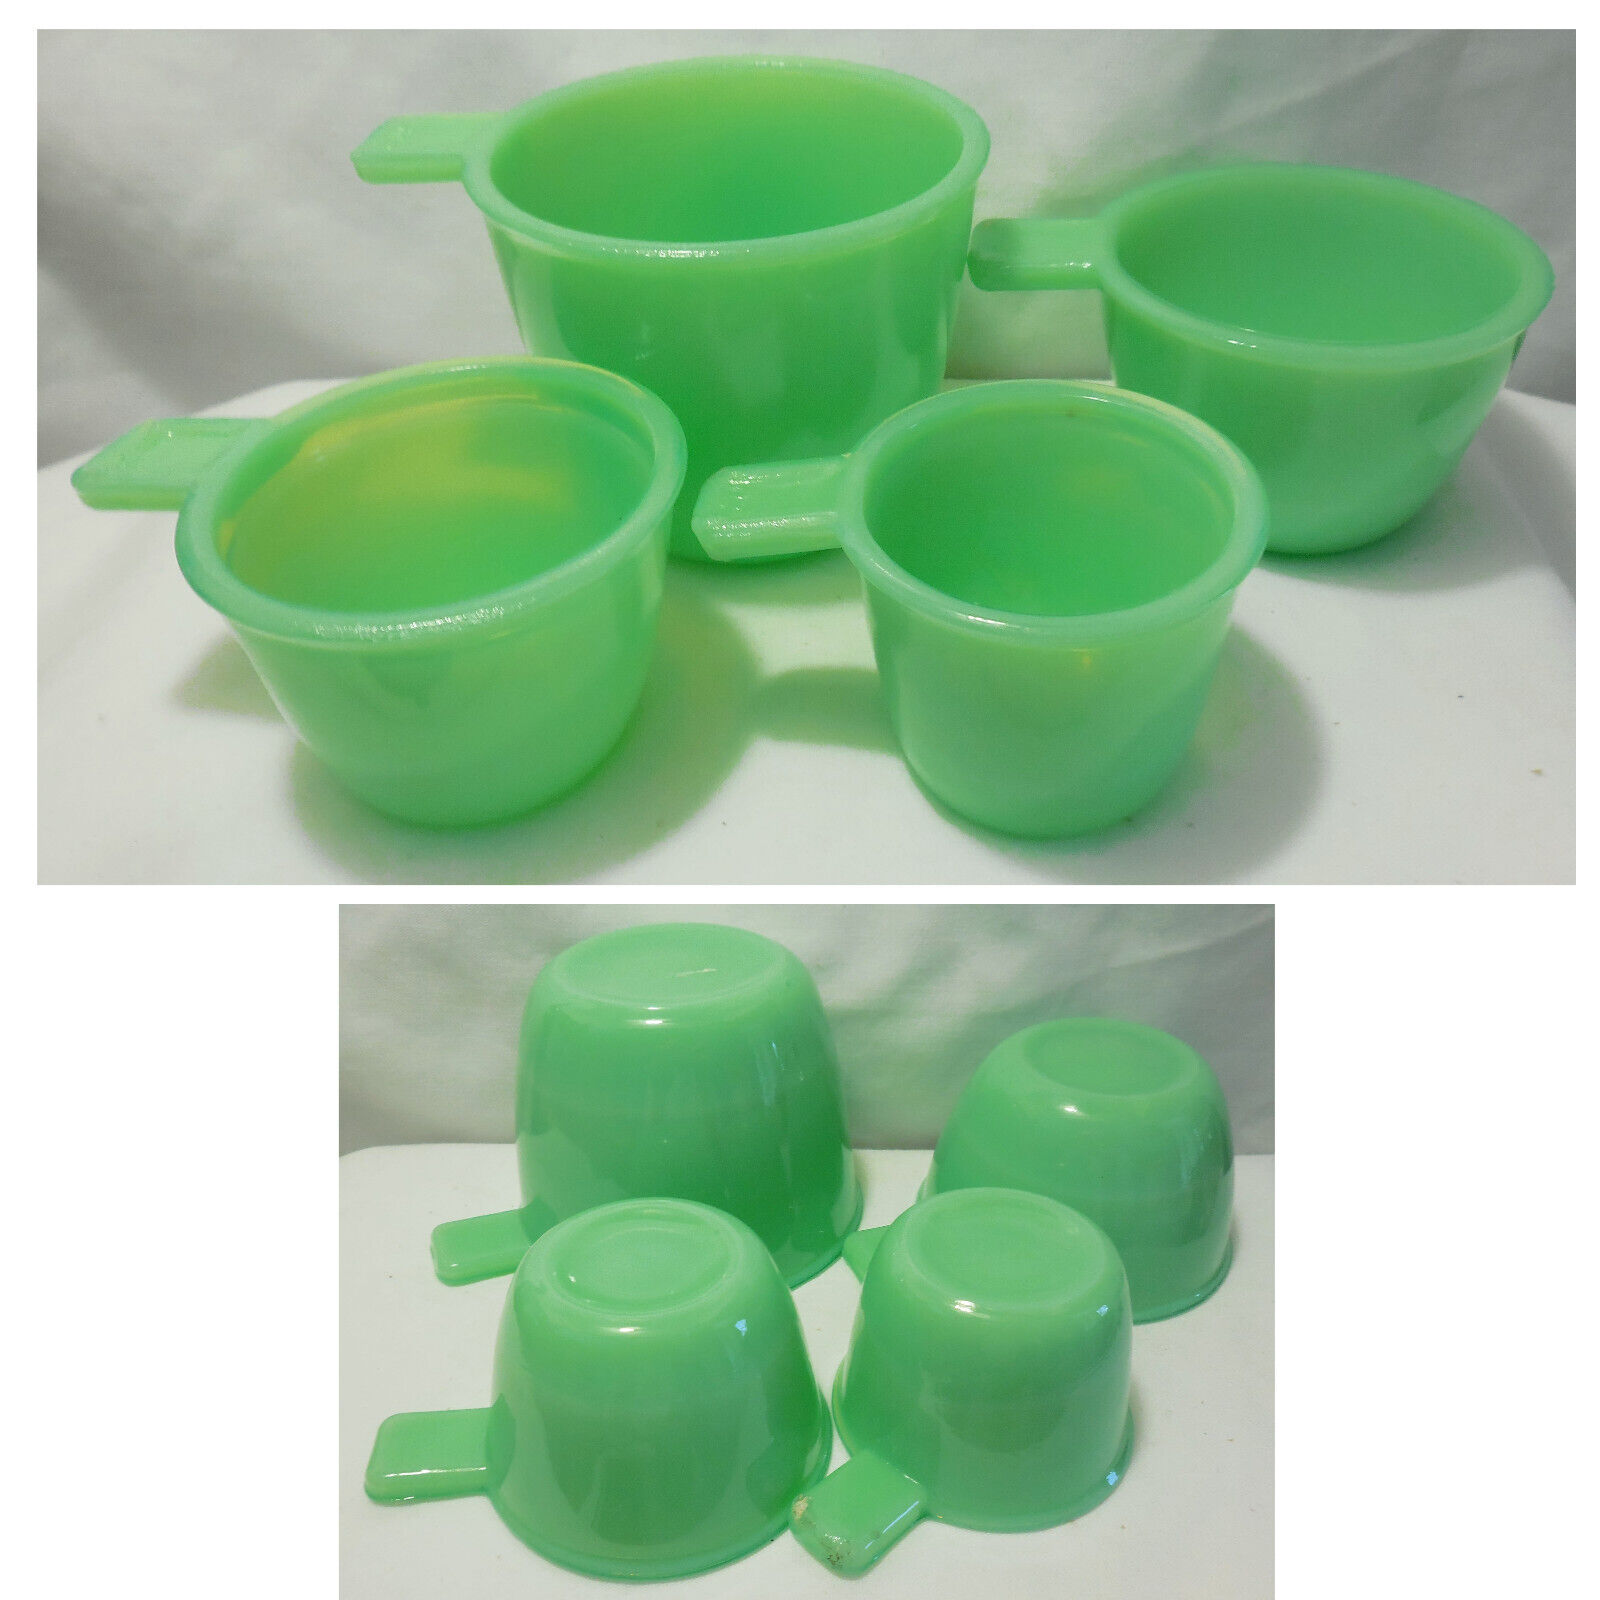 New Set of 4 Jadeite Jadite Milk Glass Measuring Nesting Cups 1/4c 1/3c 1/2c 1c